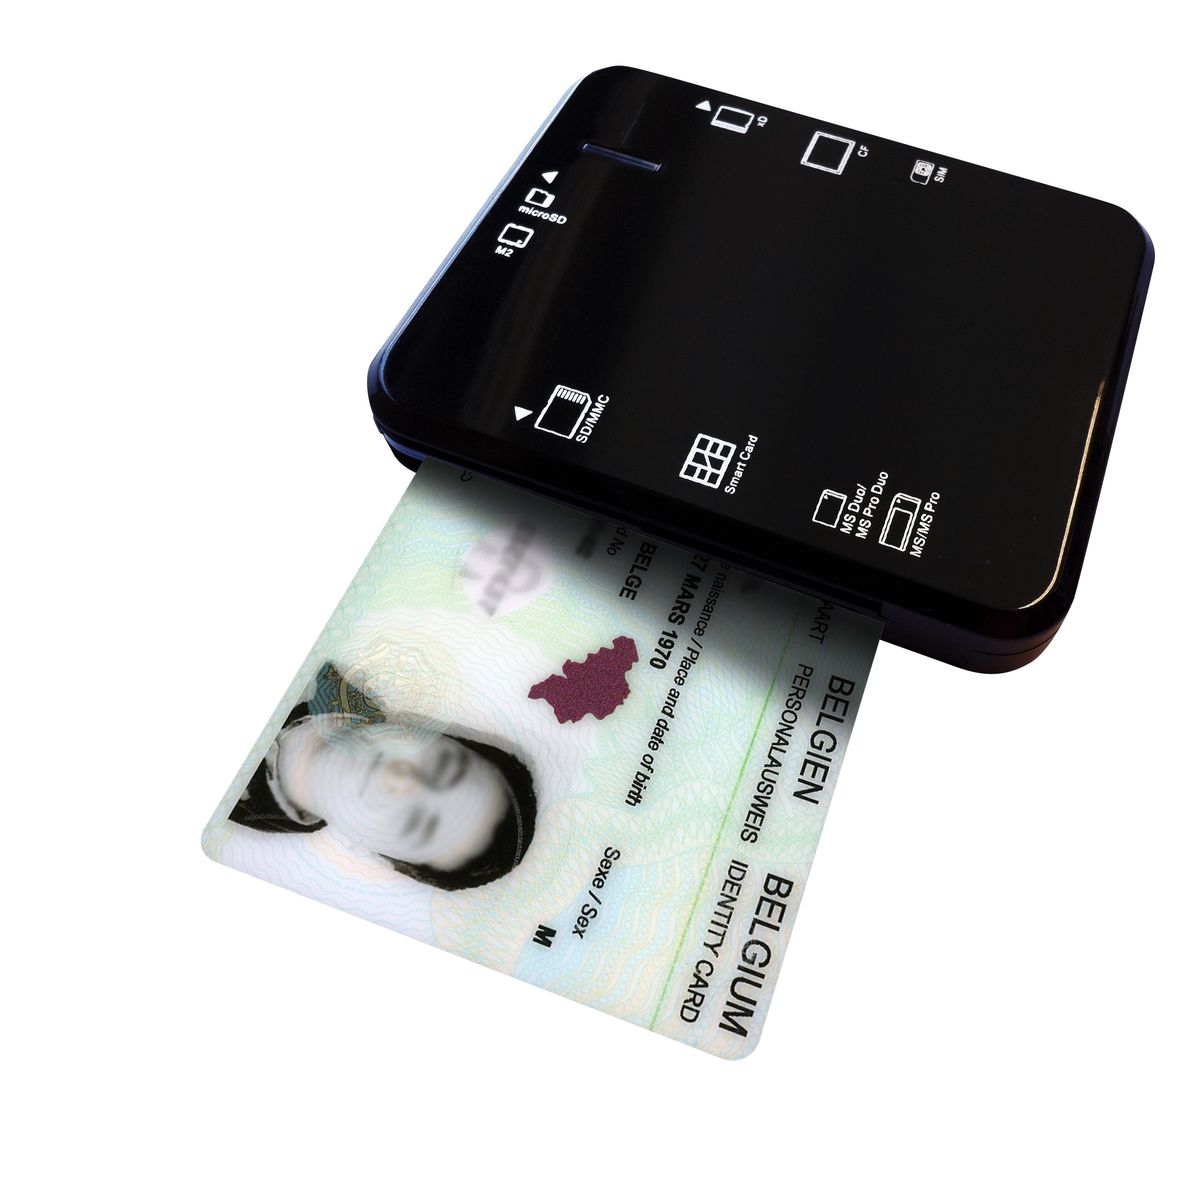 HMC - Alles-in-één Kaartlezer Elektronische Identiteitskaart (eID)